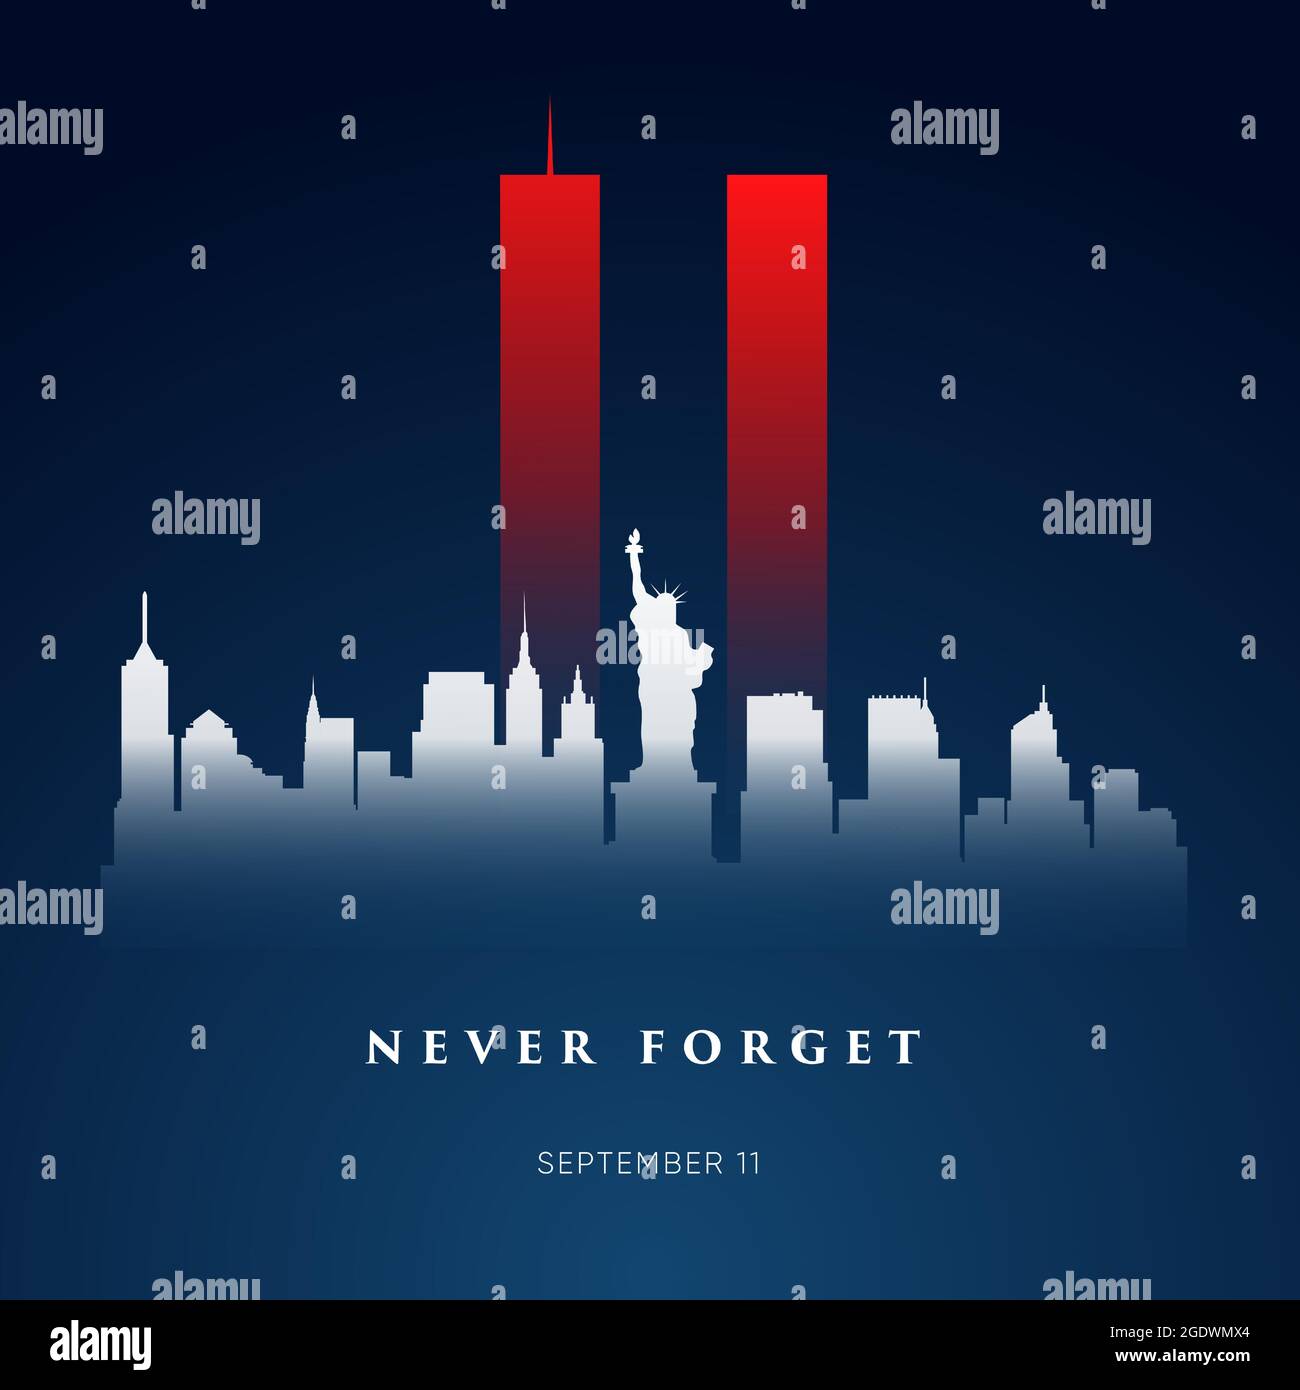 9/11 Patriot Day Banner. USA Patriot Day Karte. 11. September 2001. Wir werden Sie nie vergessen. Vektor-Design-Vorlage für Patriot Day. Stock Vektor